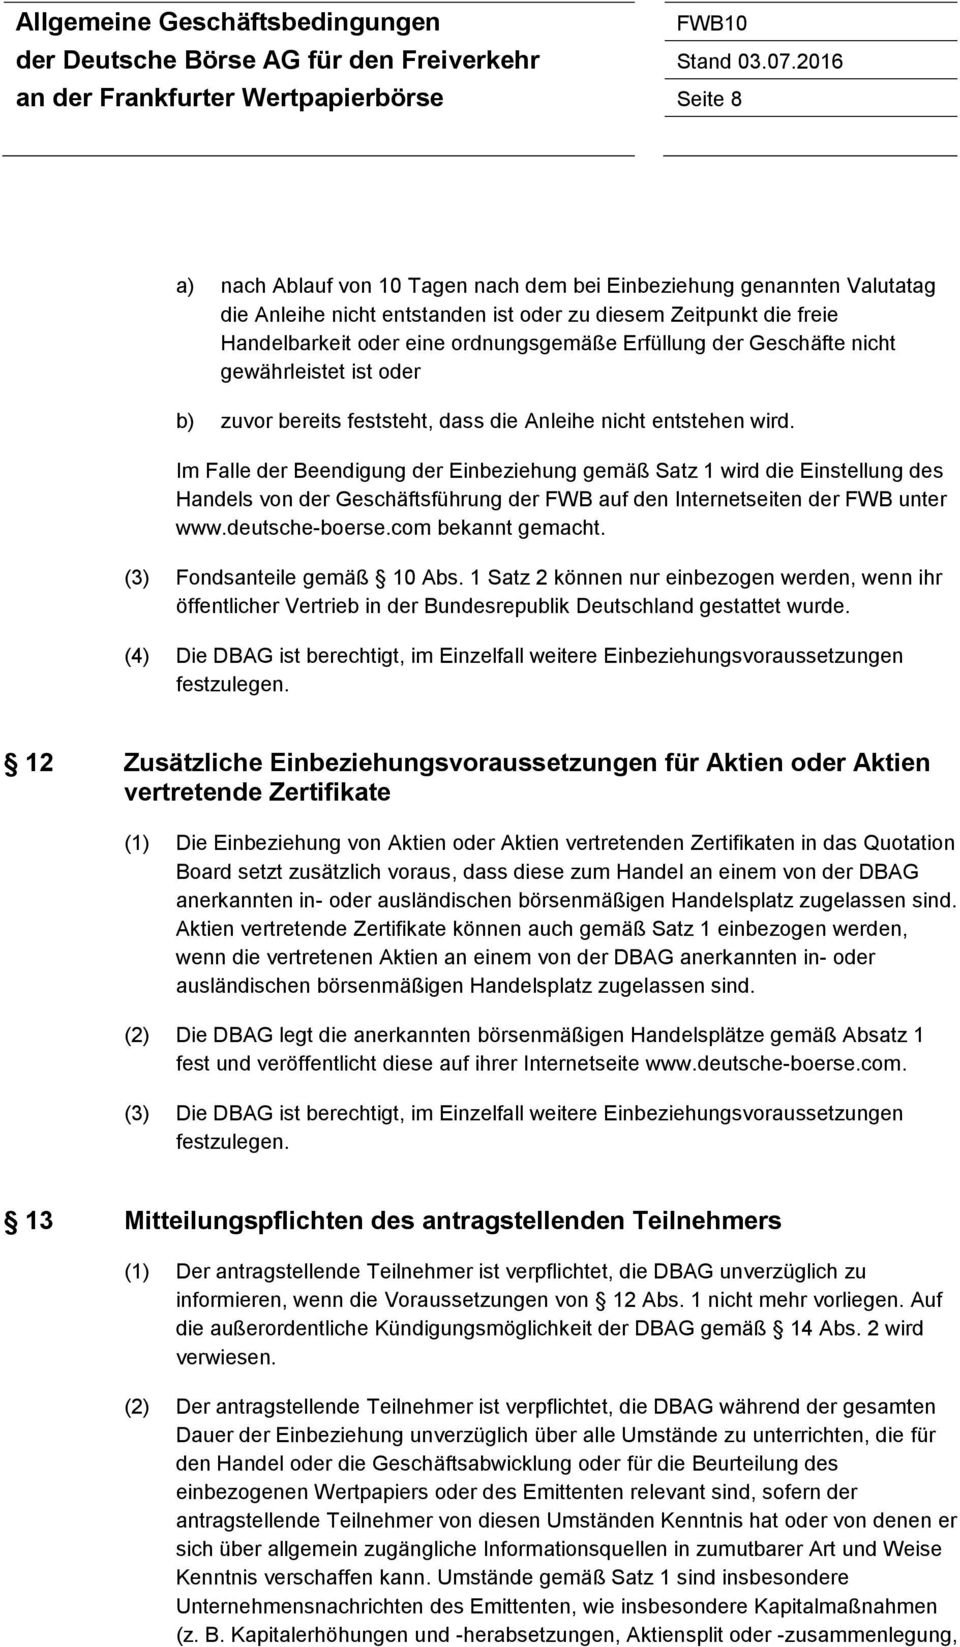 Im Falle der Beendigung der Einbeziehung gemäß Satz 1 wird die Einstellung des Handels von der Geschäftsführung der FWB auf den Internetseiten der FWB unter www.deutsche-boerse.com bekannt gemacht.